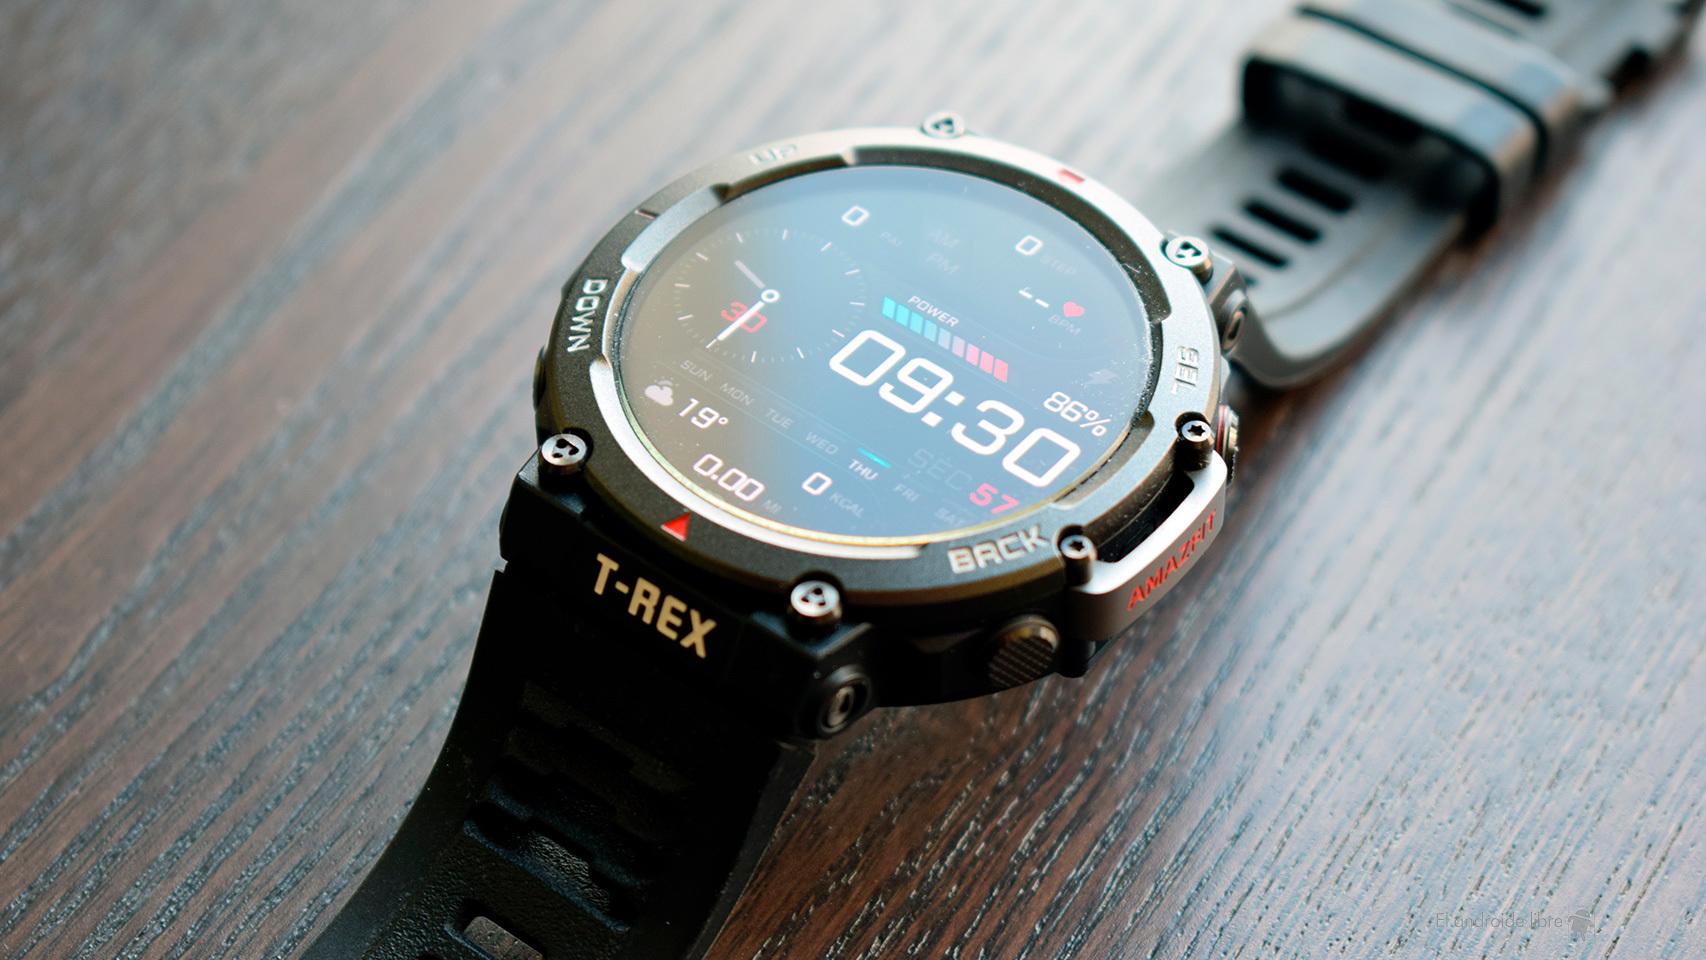 He probado el smartwatch Amazfit Active: esto es lo que debería ser un reloj  inteligente y barato para deportes